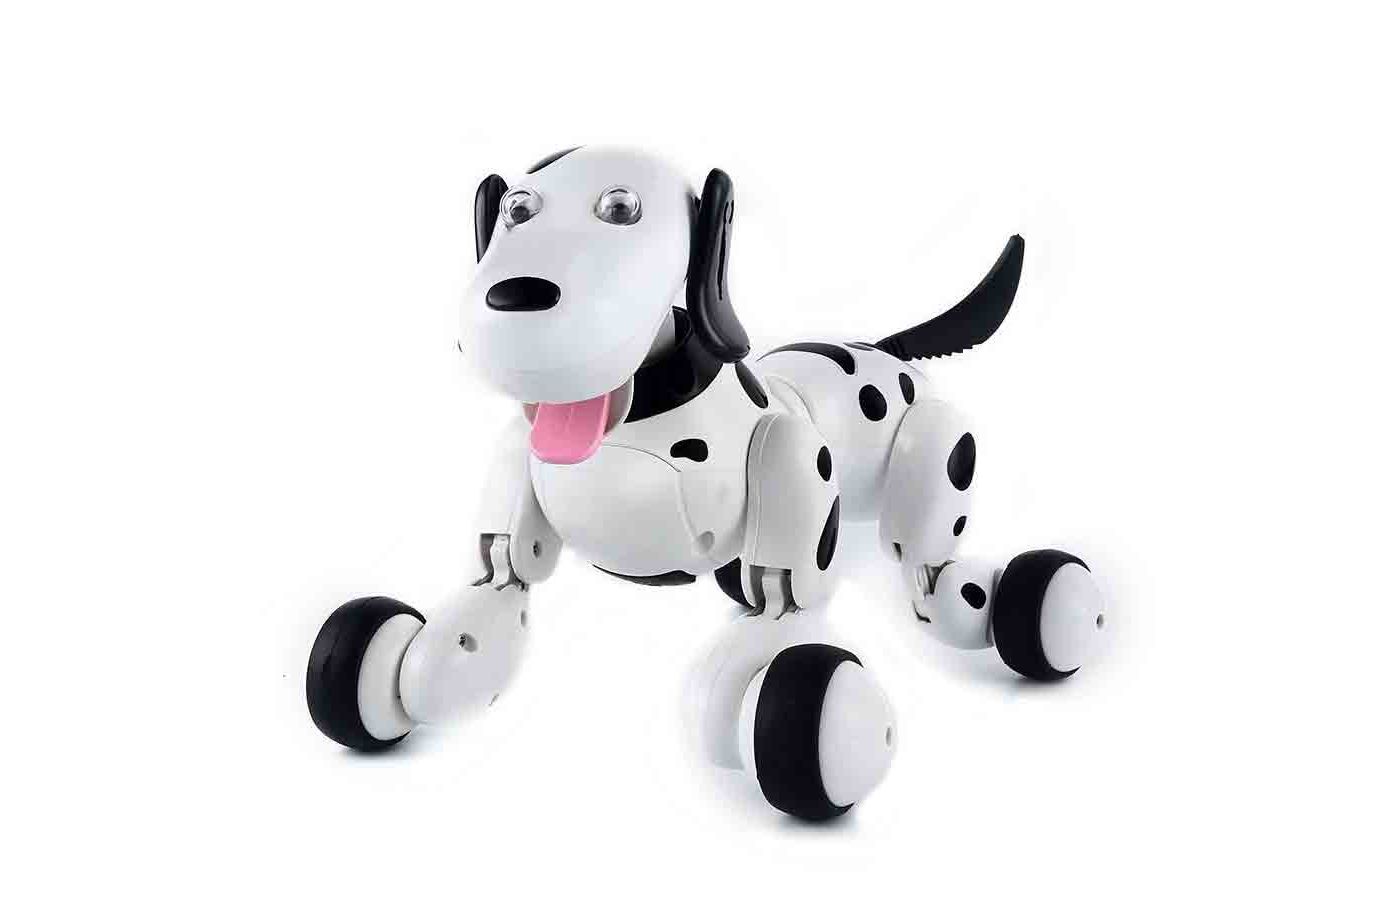 SainSmart Jr. Robot Dog Smart Dog